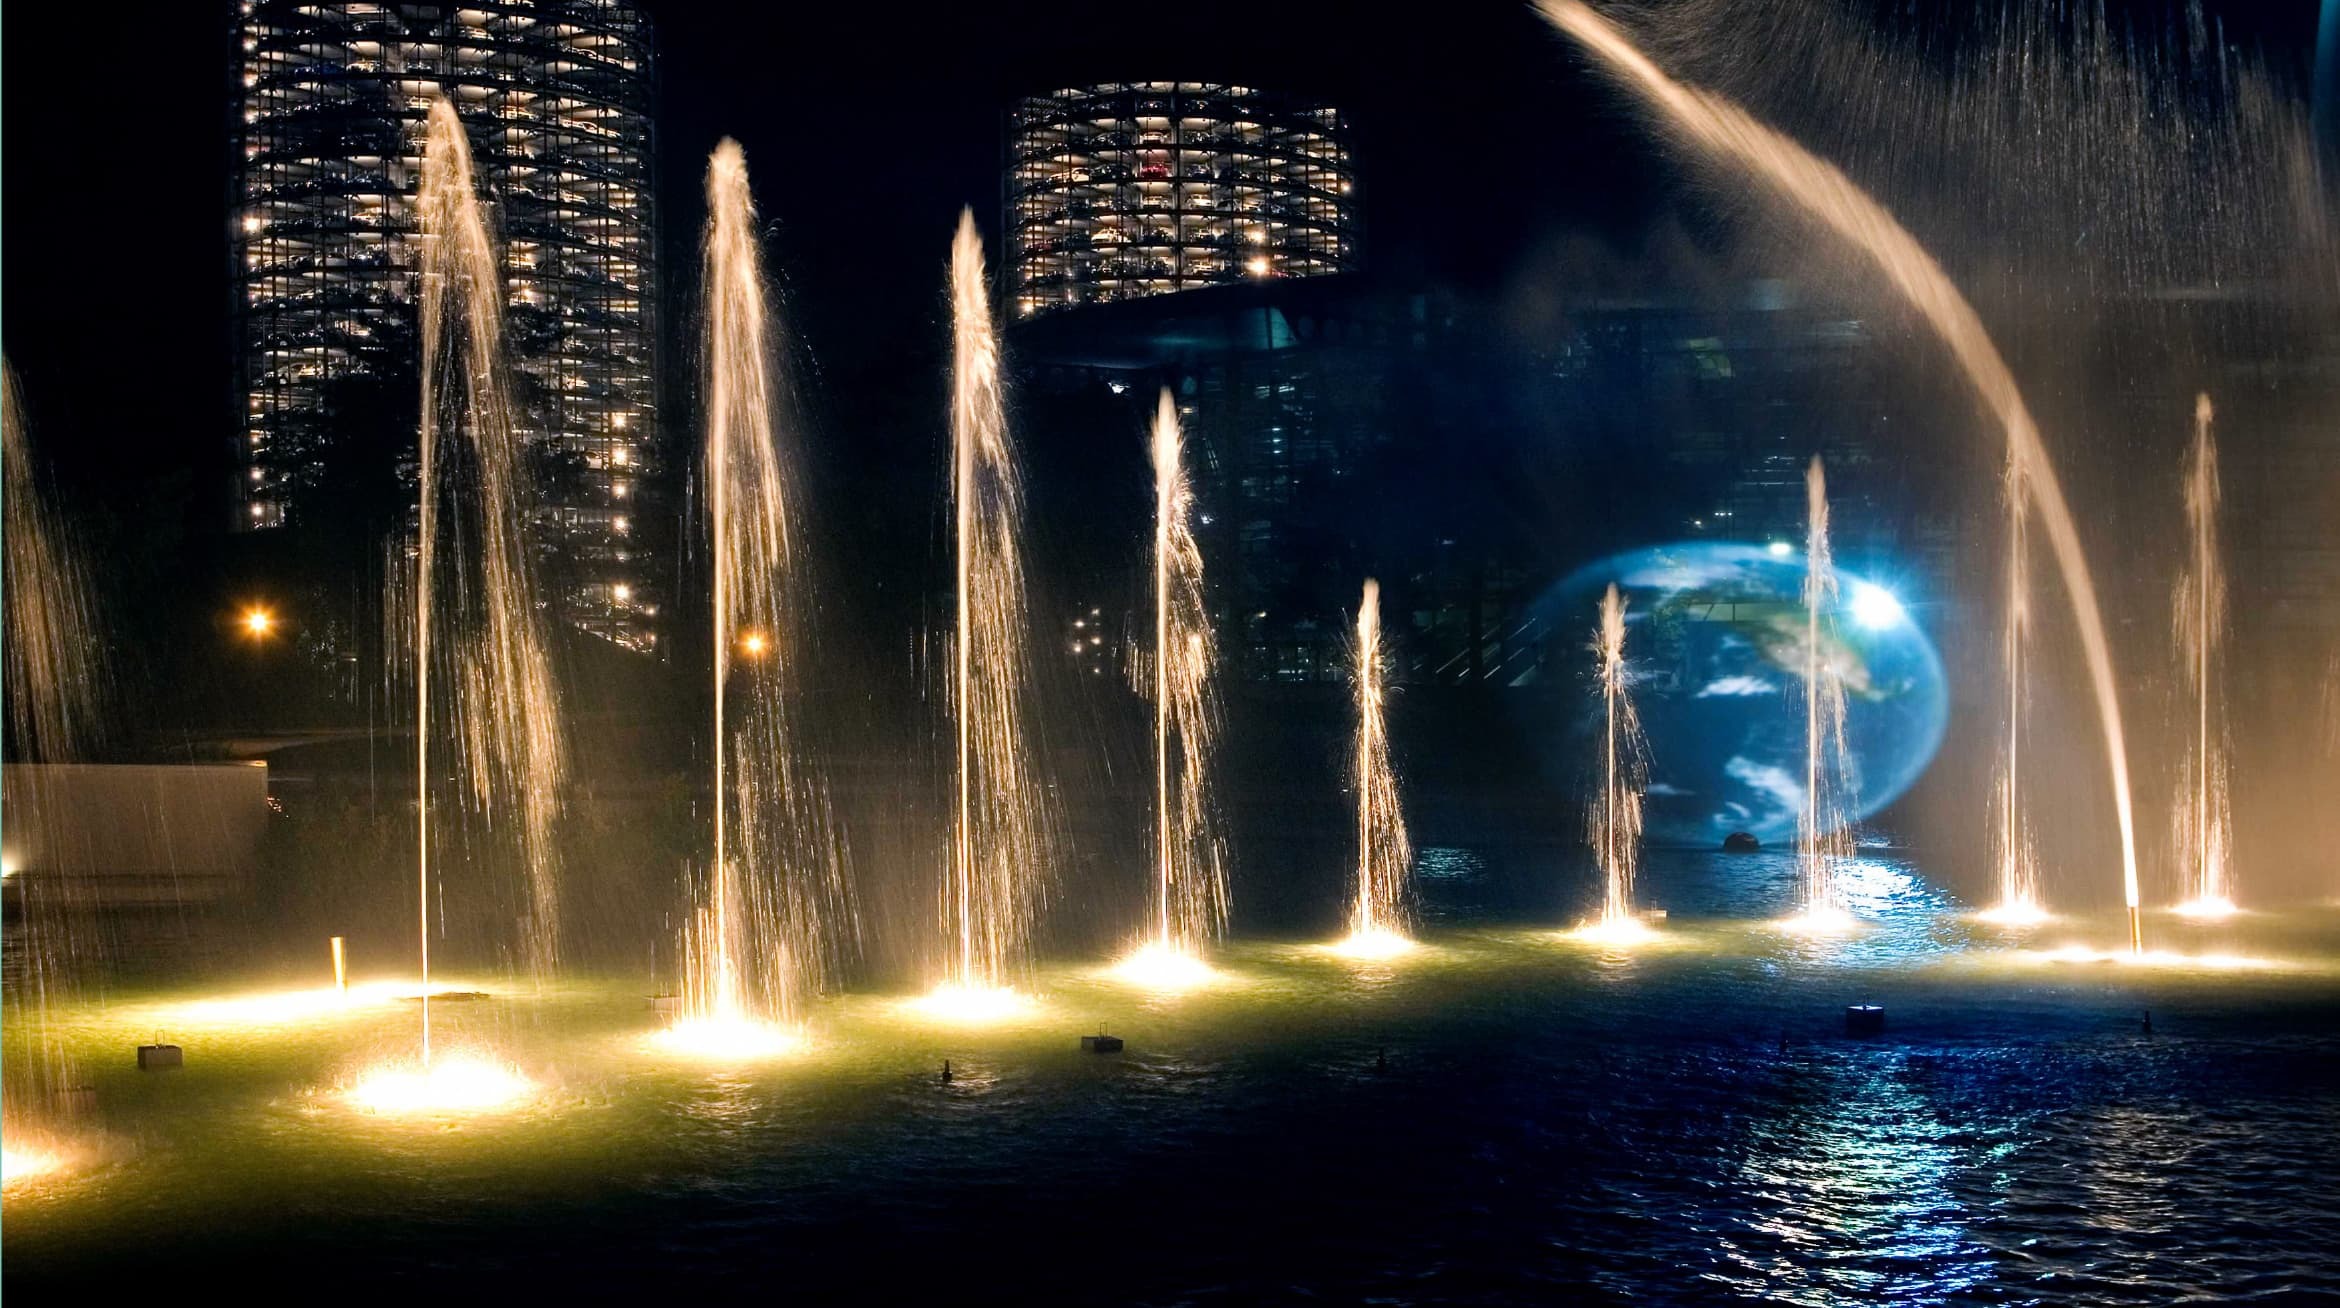 Foto einer Wassershow in der Autostadt. Beleutete Fontänen spritzen in der Nacht aus einem Gewässer. Im Hintergrund leuchten die beiden Abholtürme.